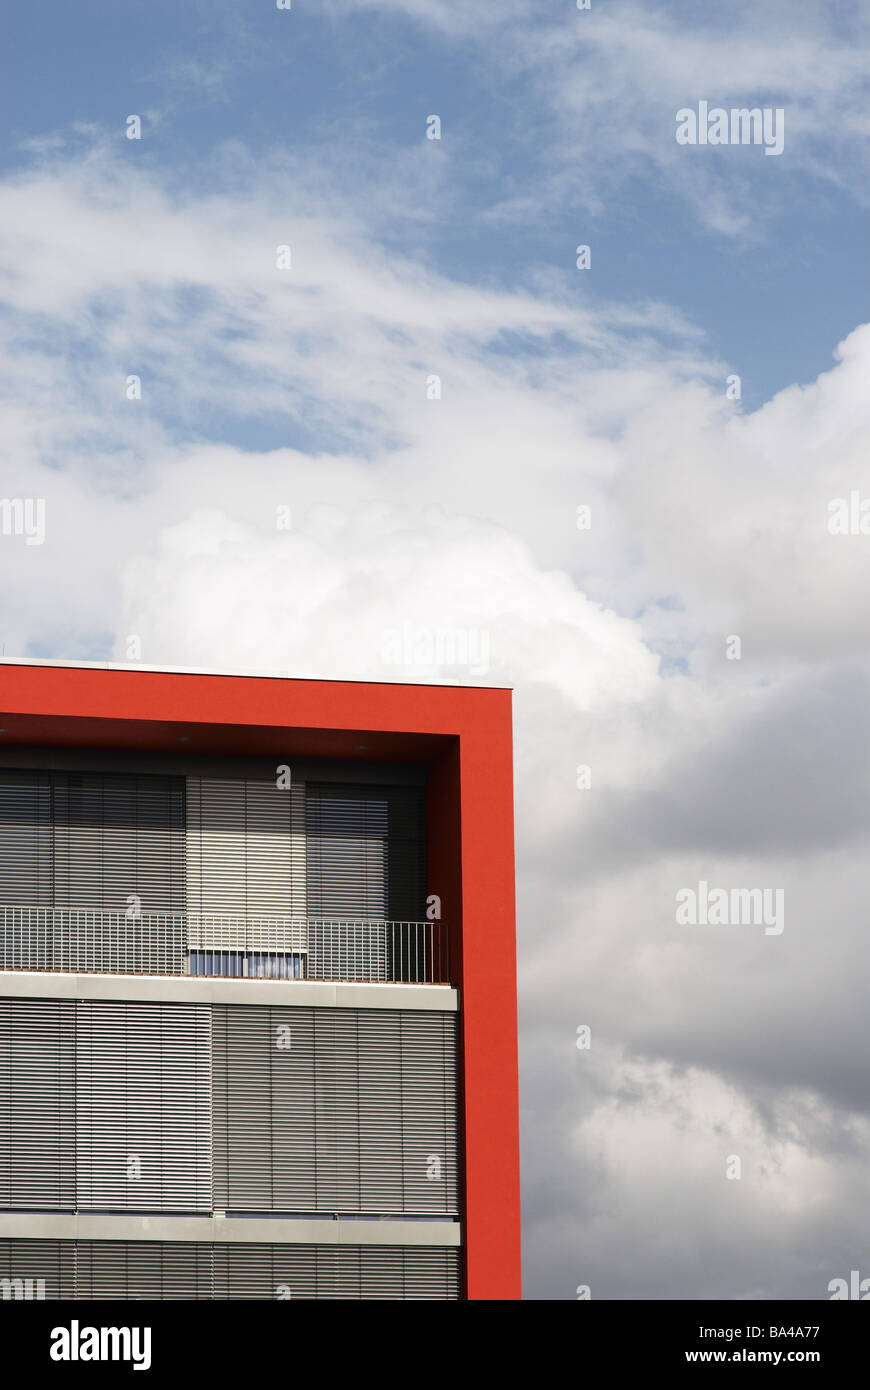 Façade de maison détail Kubus rouge vénitien Windows 03/2006 ciel nuages fermé à l'extérieur de l'architecture s'inspire de la construction Banque D'Images